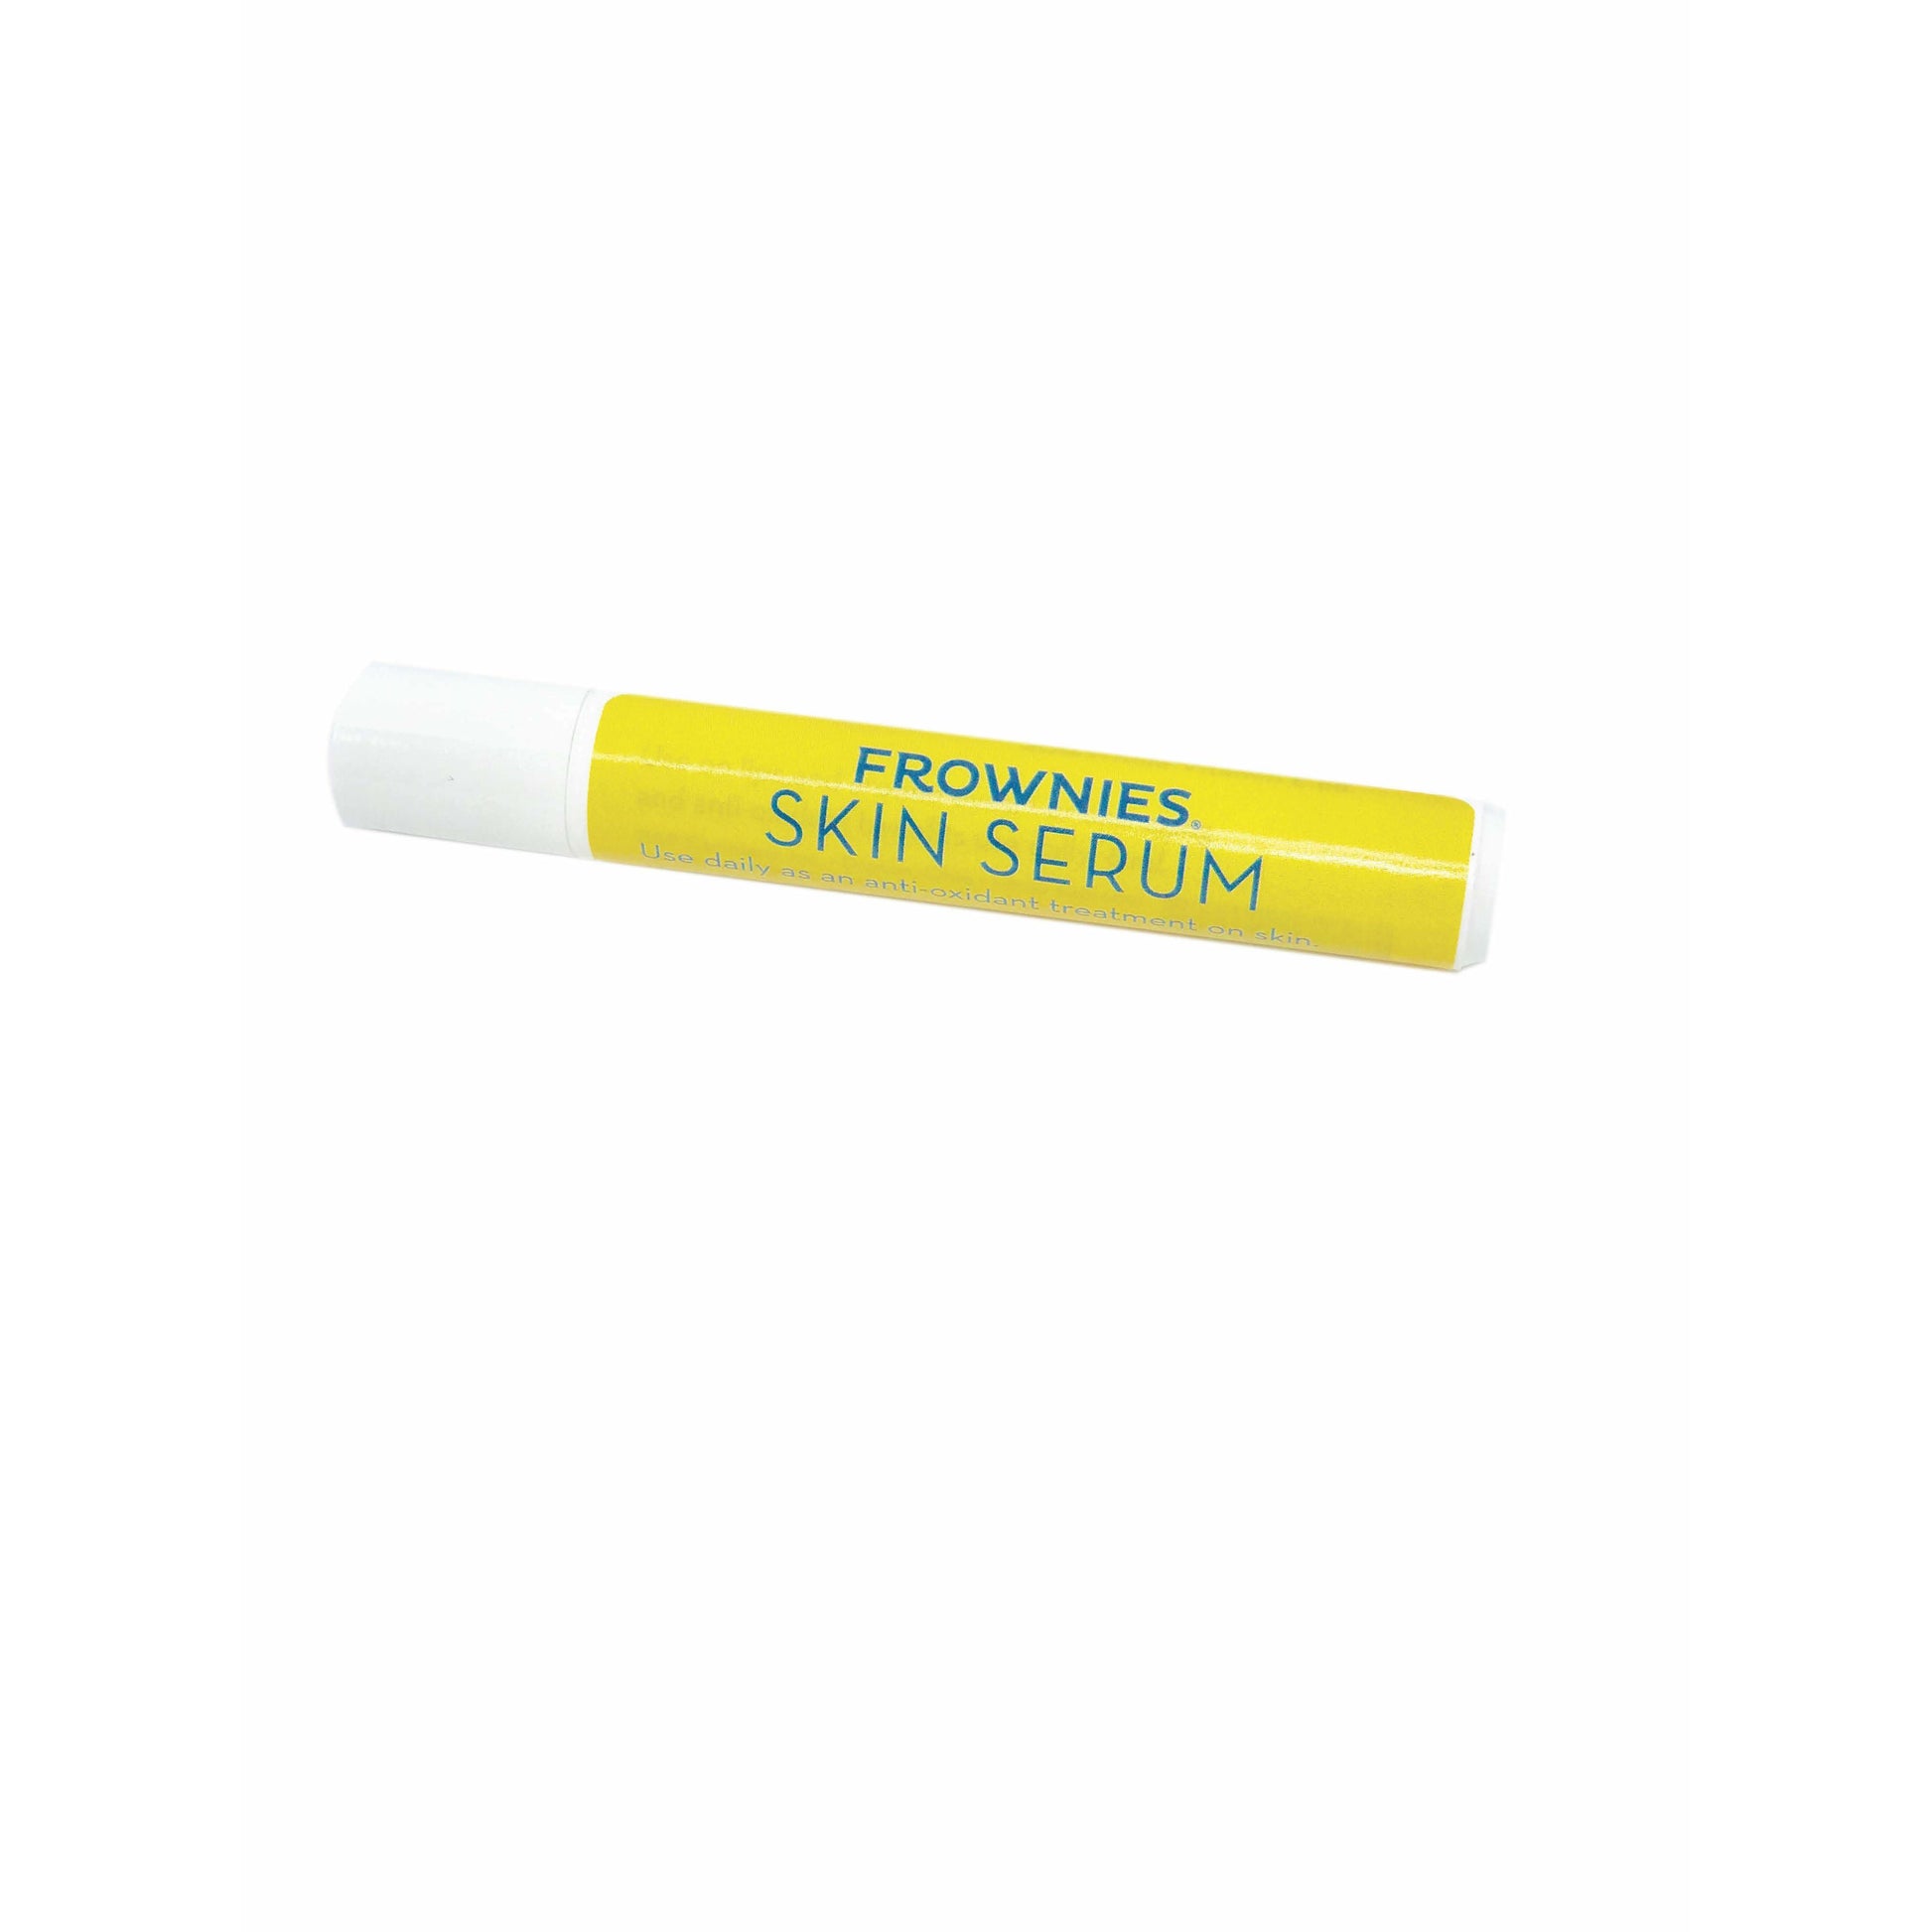 8 ml roller tube of Frownies Skin Serum 